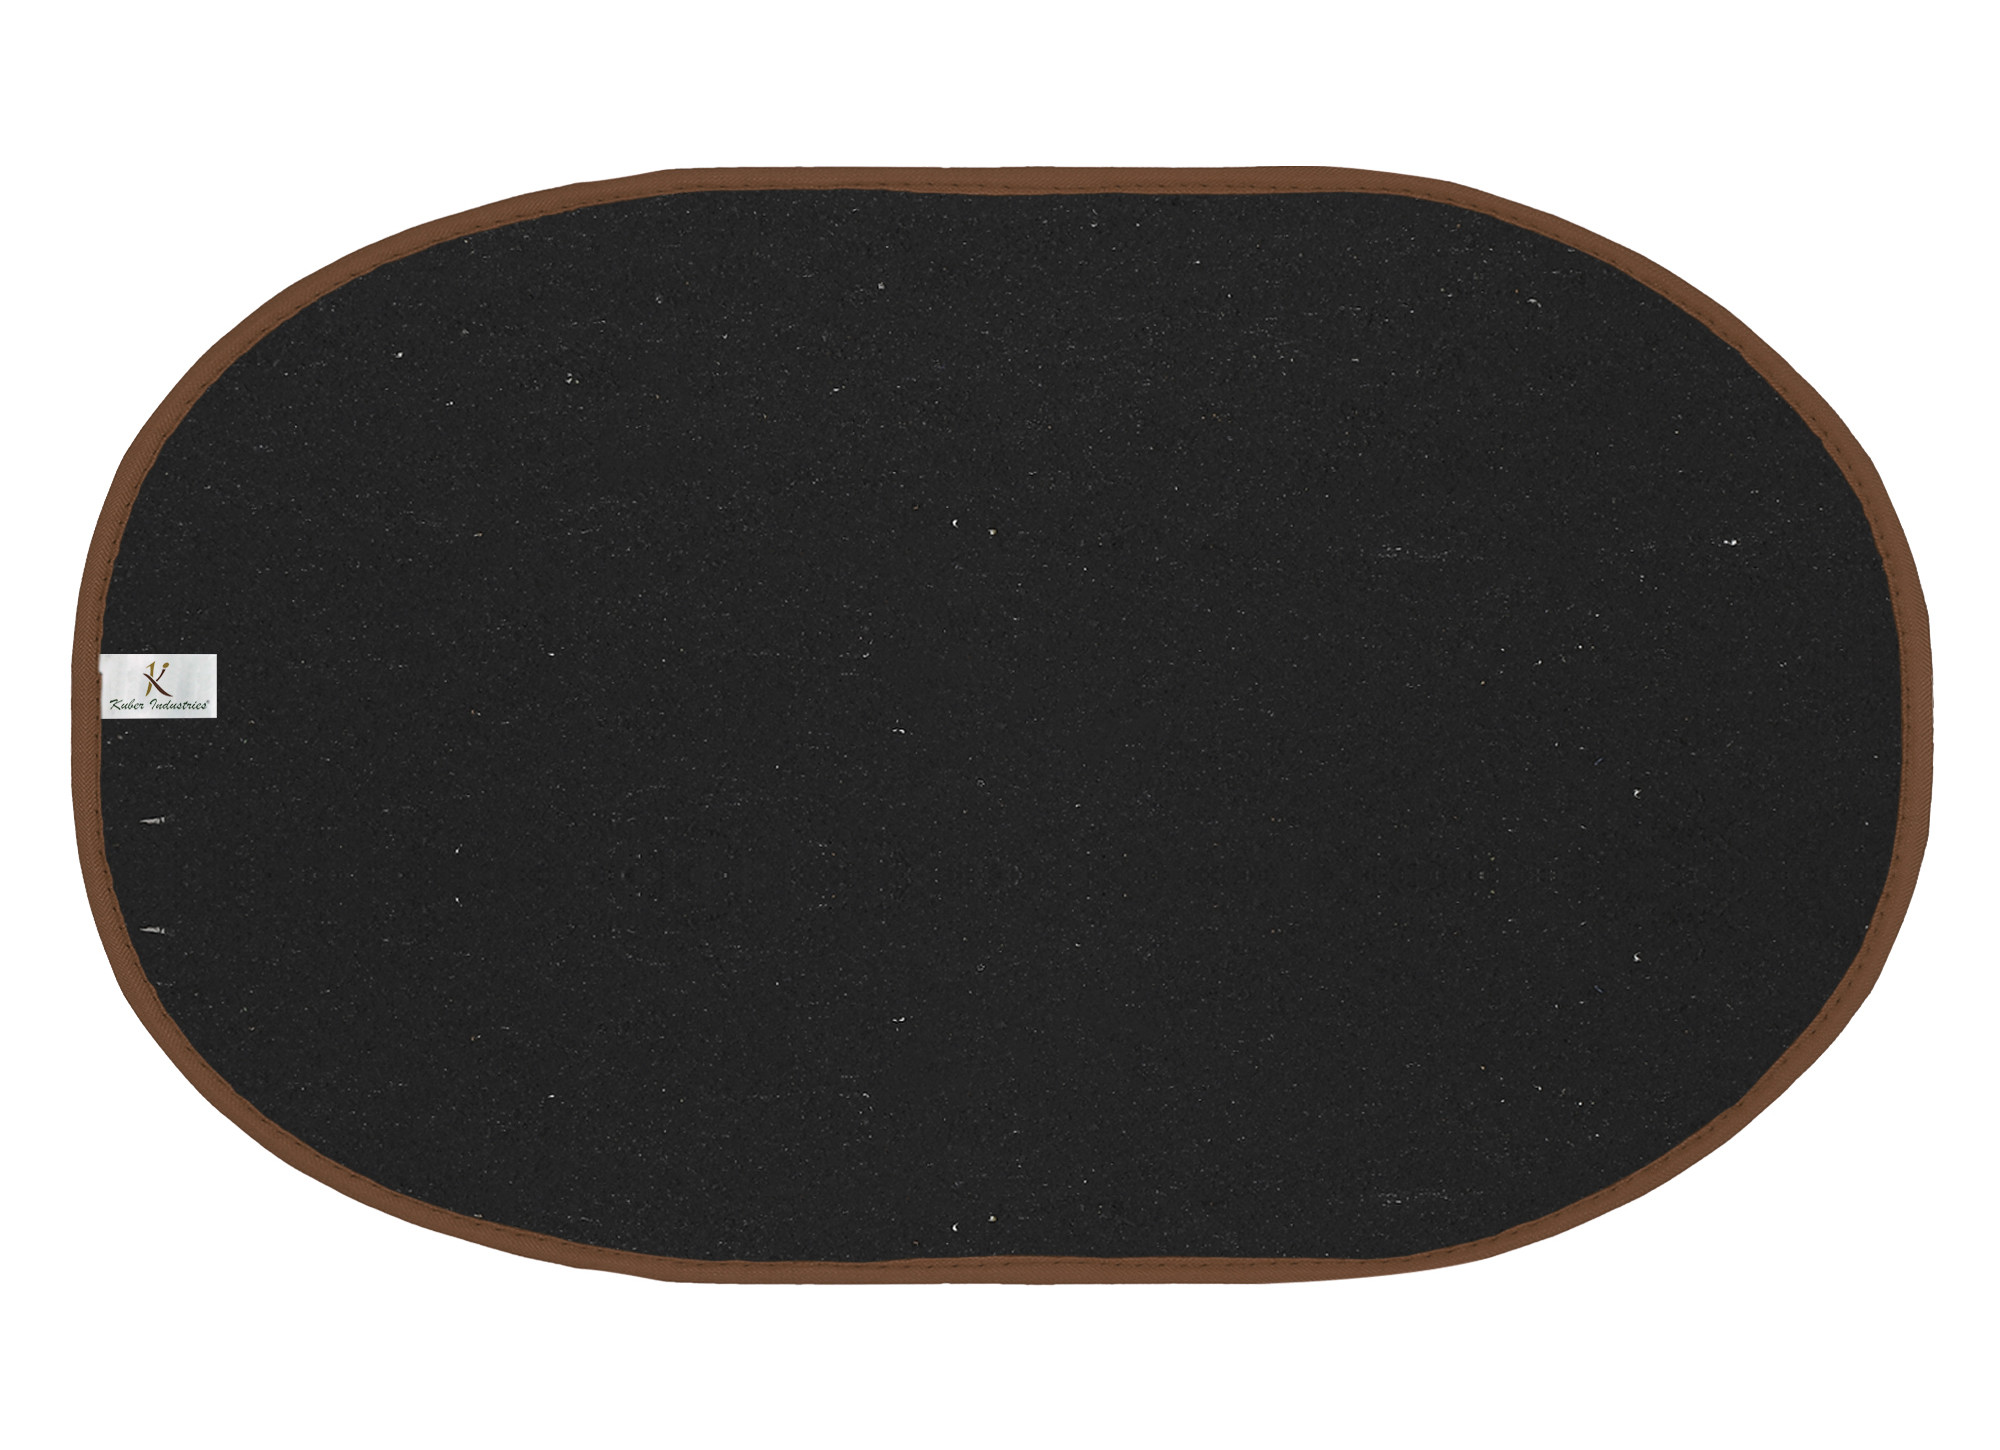 Kuber Industries Oval Shape Durable Microfiber Door Mat, Heavy Duty Doormat, Indoor Outdoor, Easy Clean, Waterproof, Low-Profile Mats for Entry, Patio, Garage (Set Of 3,14'' x 23'',Grey & Blue & Brown)-KUBMRT12145